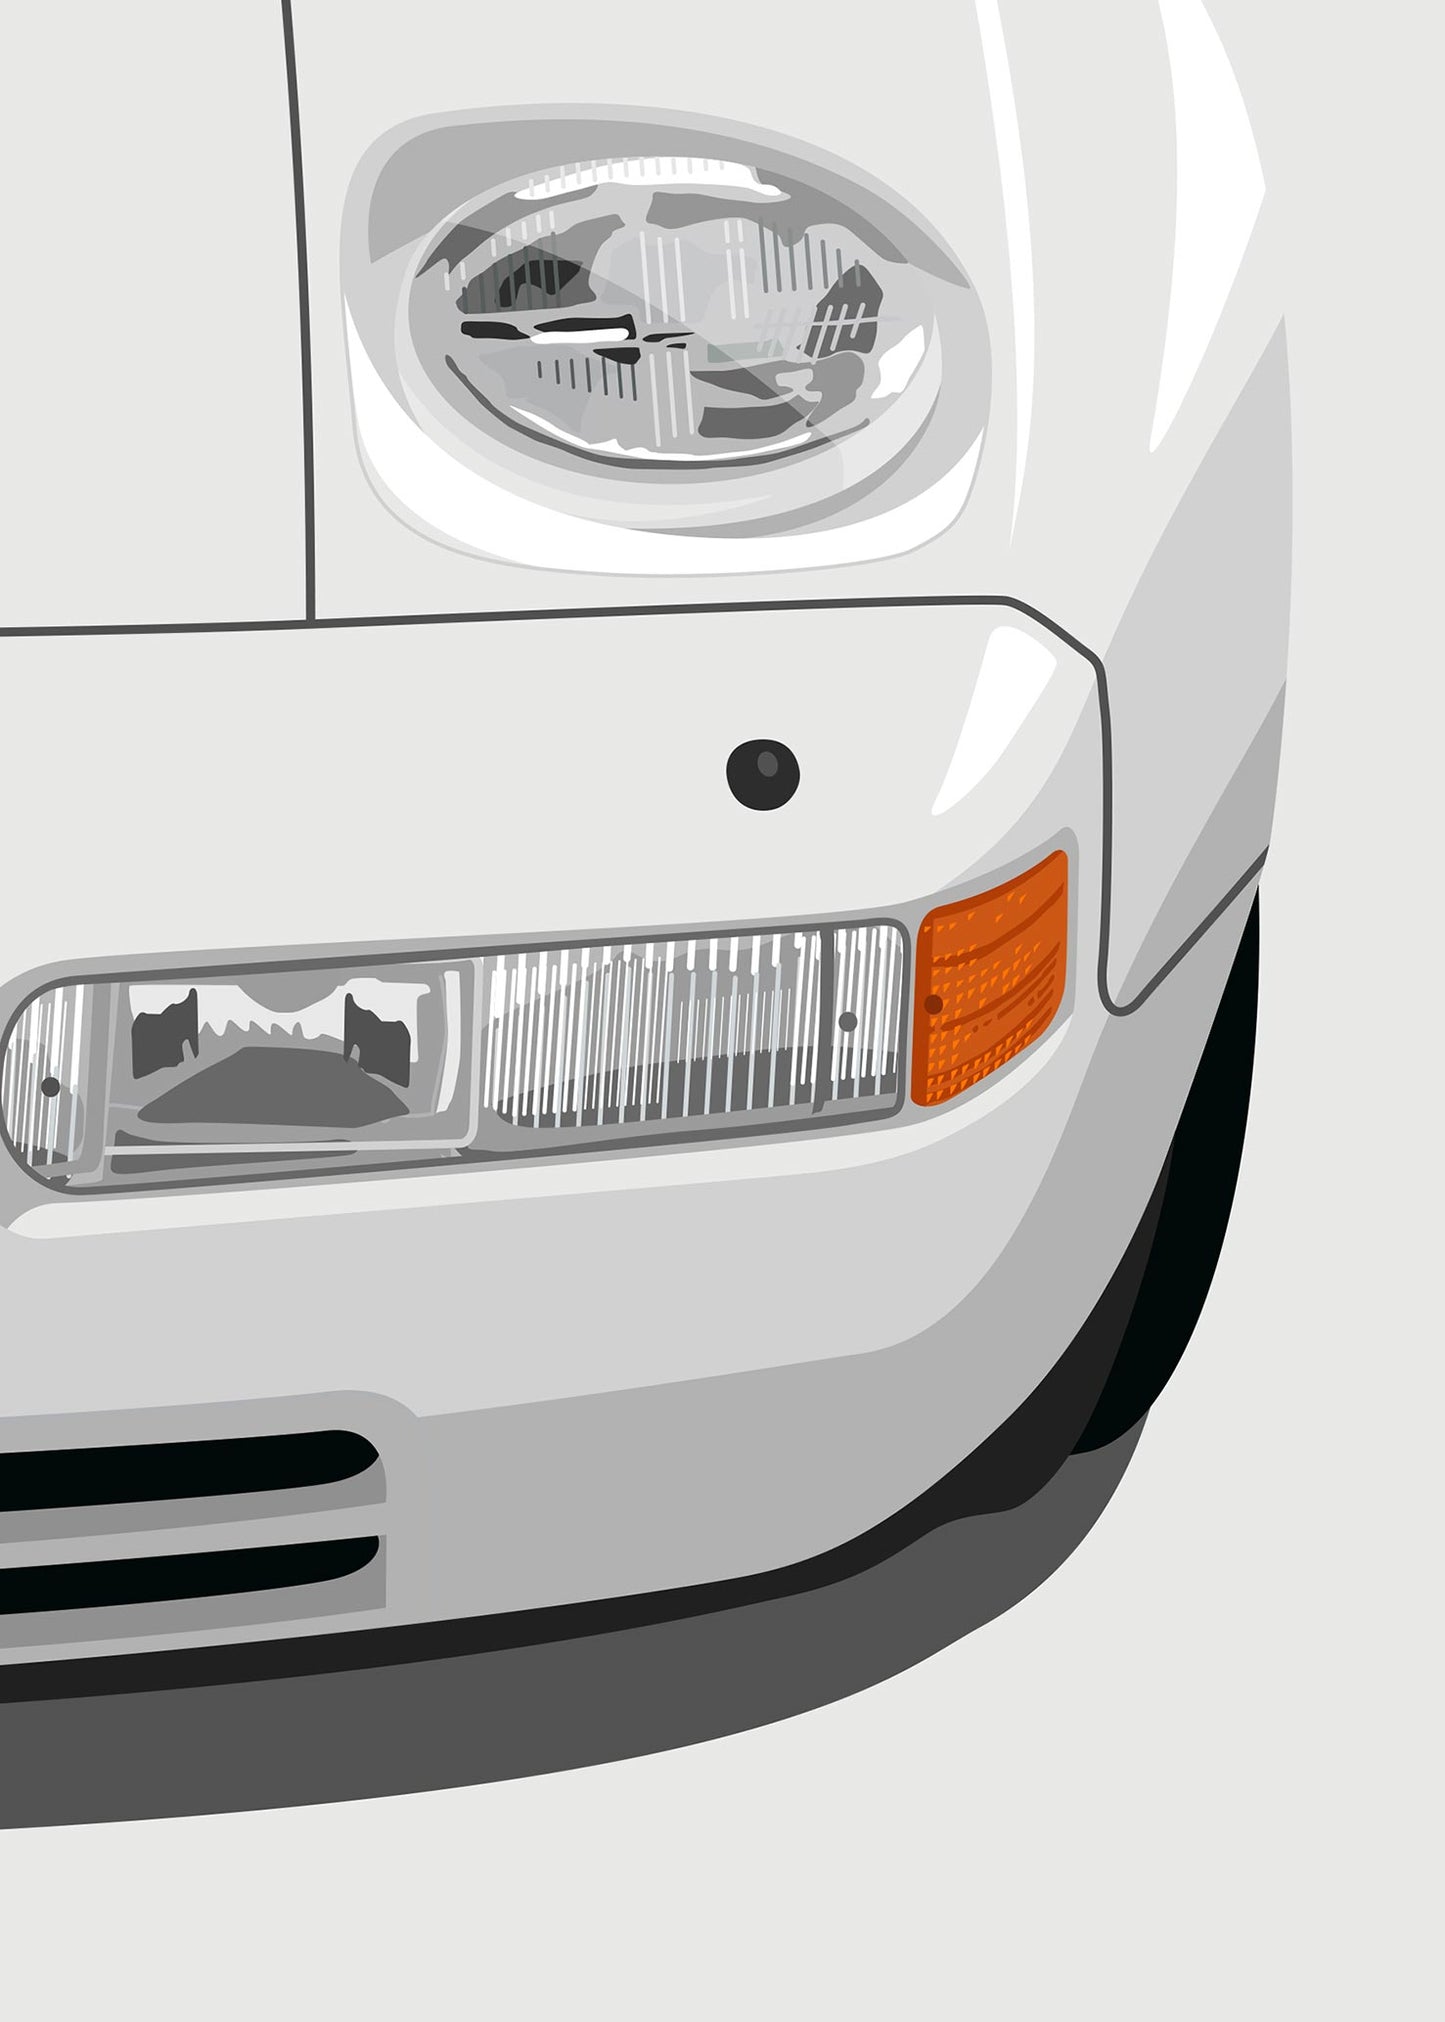 1990 Porsche 928 S4 - Grand Prix White - poster print